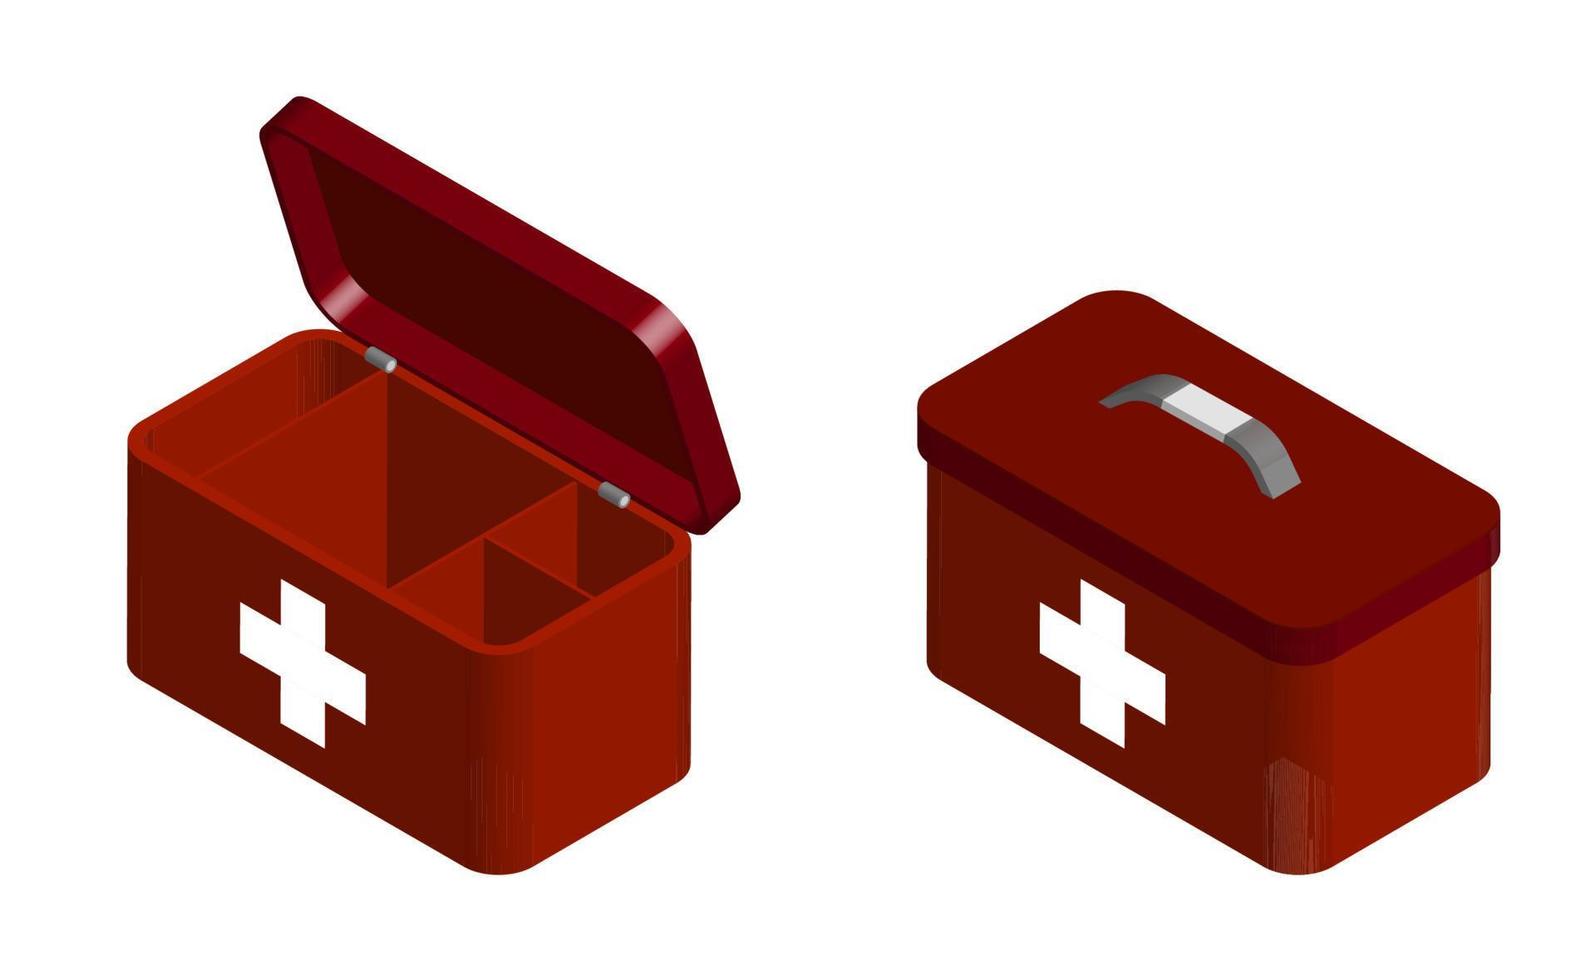 röd först hjälpa utrustning för nödsituation återupplivning i öppen och stängd form. uppsättning av livräddare och medicinsk arbetstagare till behandla en patient. isolerat 3d vektor på vit bakgrund